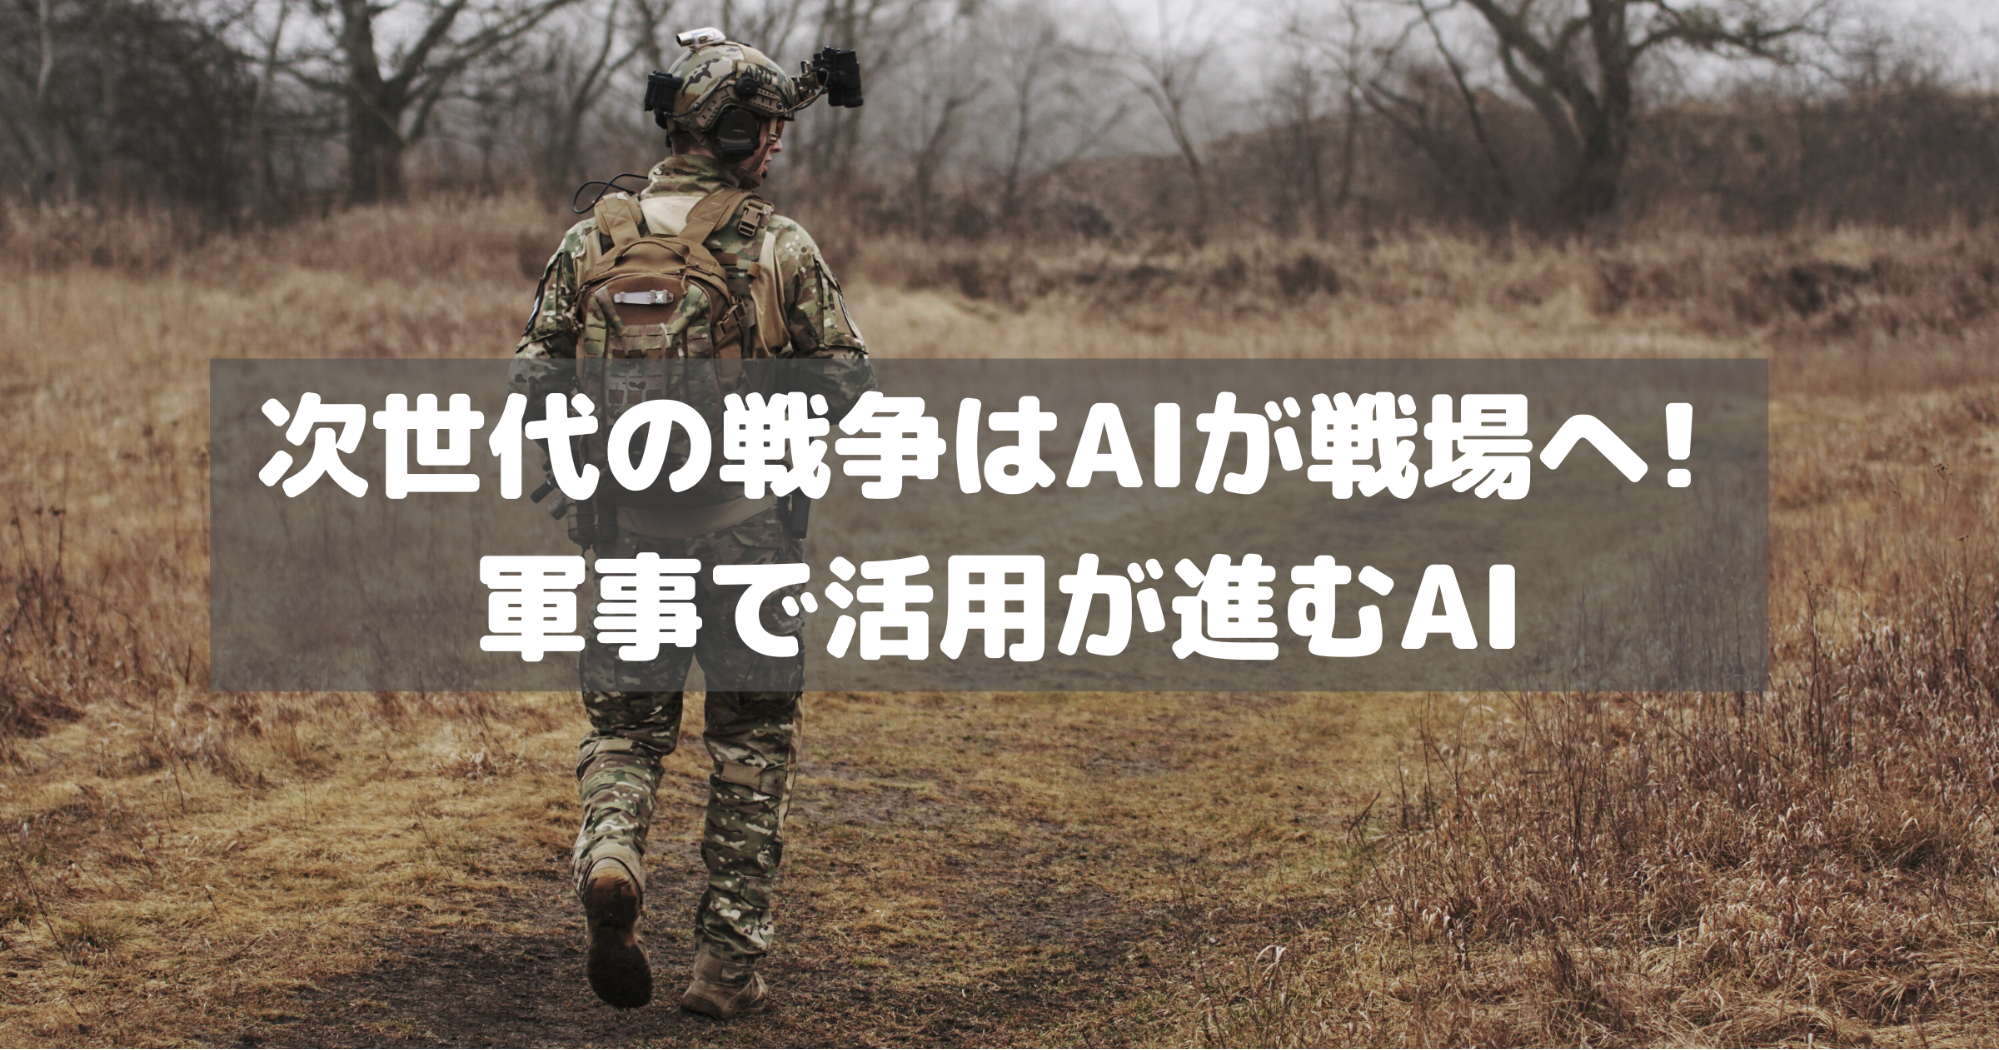 Aiが人の代わりに戦場へ 軍事で活用が進むai Ai専門ニュースメディア Ainow